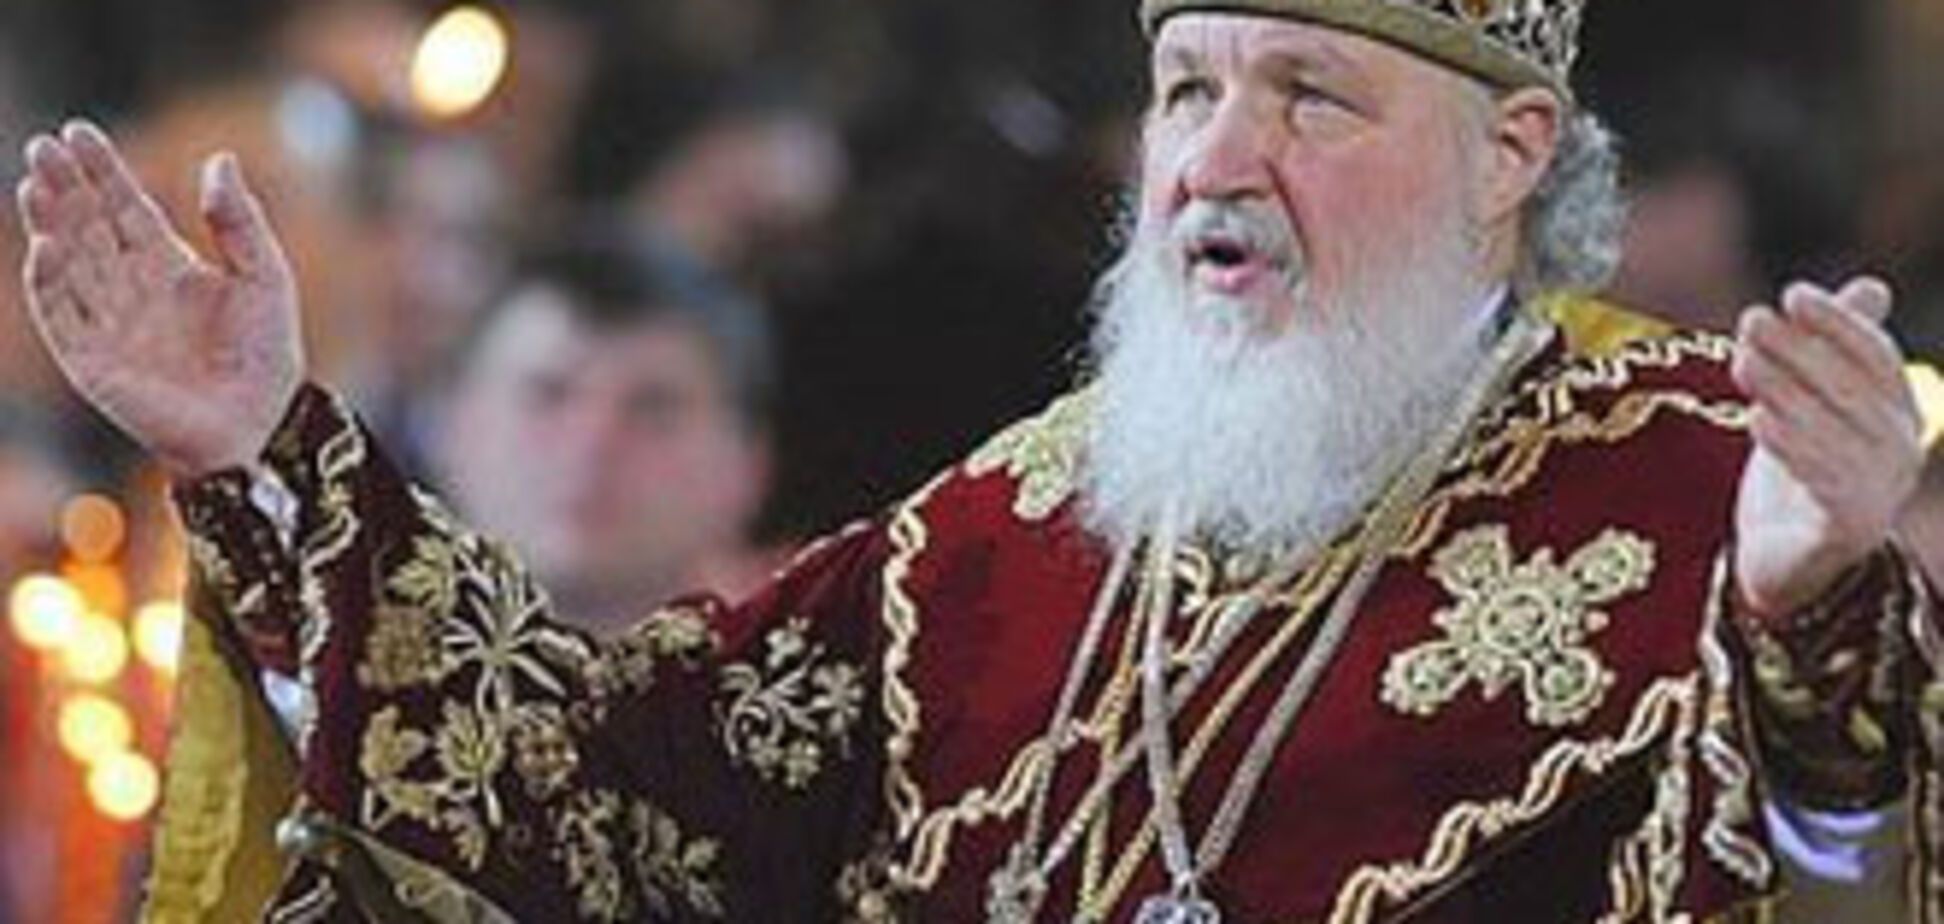 Le Temps: Патриарх Кирилл: визит с политическим акцентом